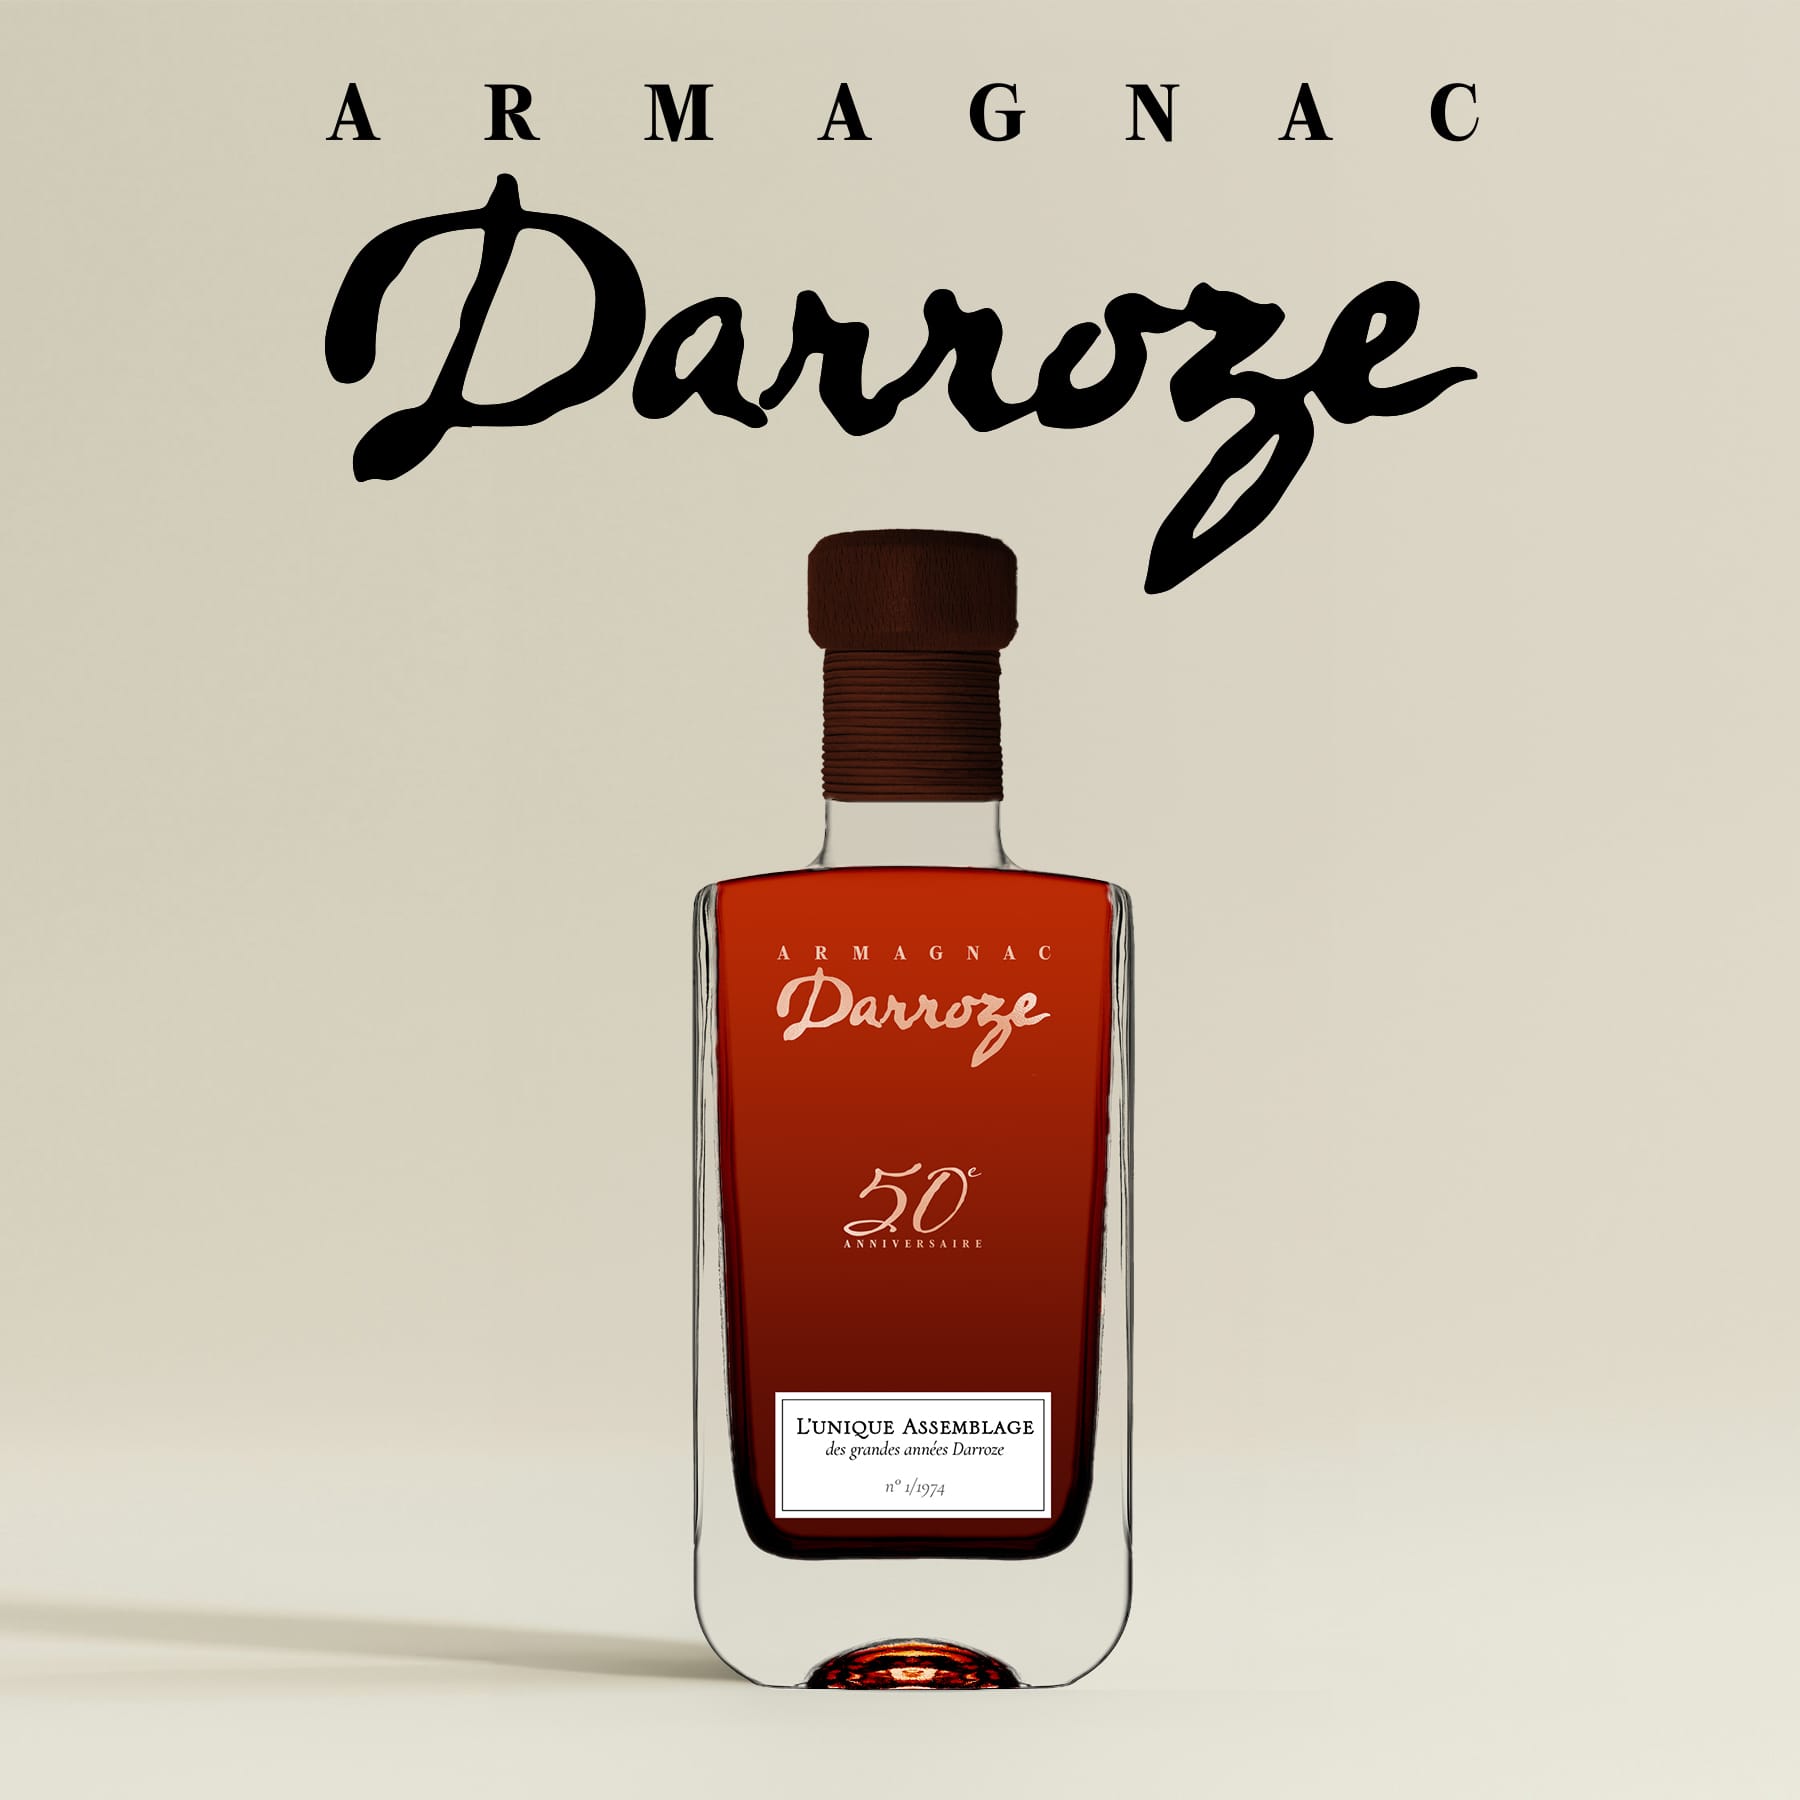 Les Armagnacs Darroze lancent leur année anniversaire